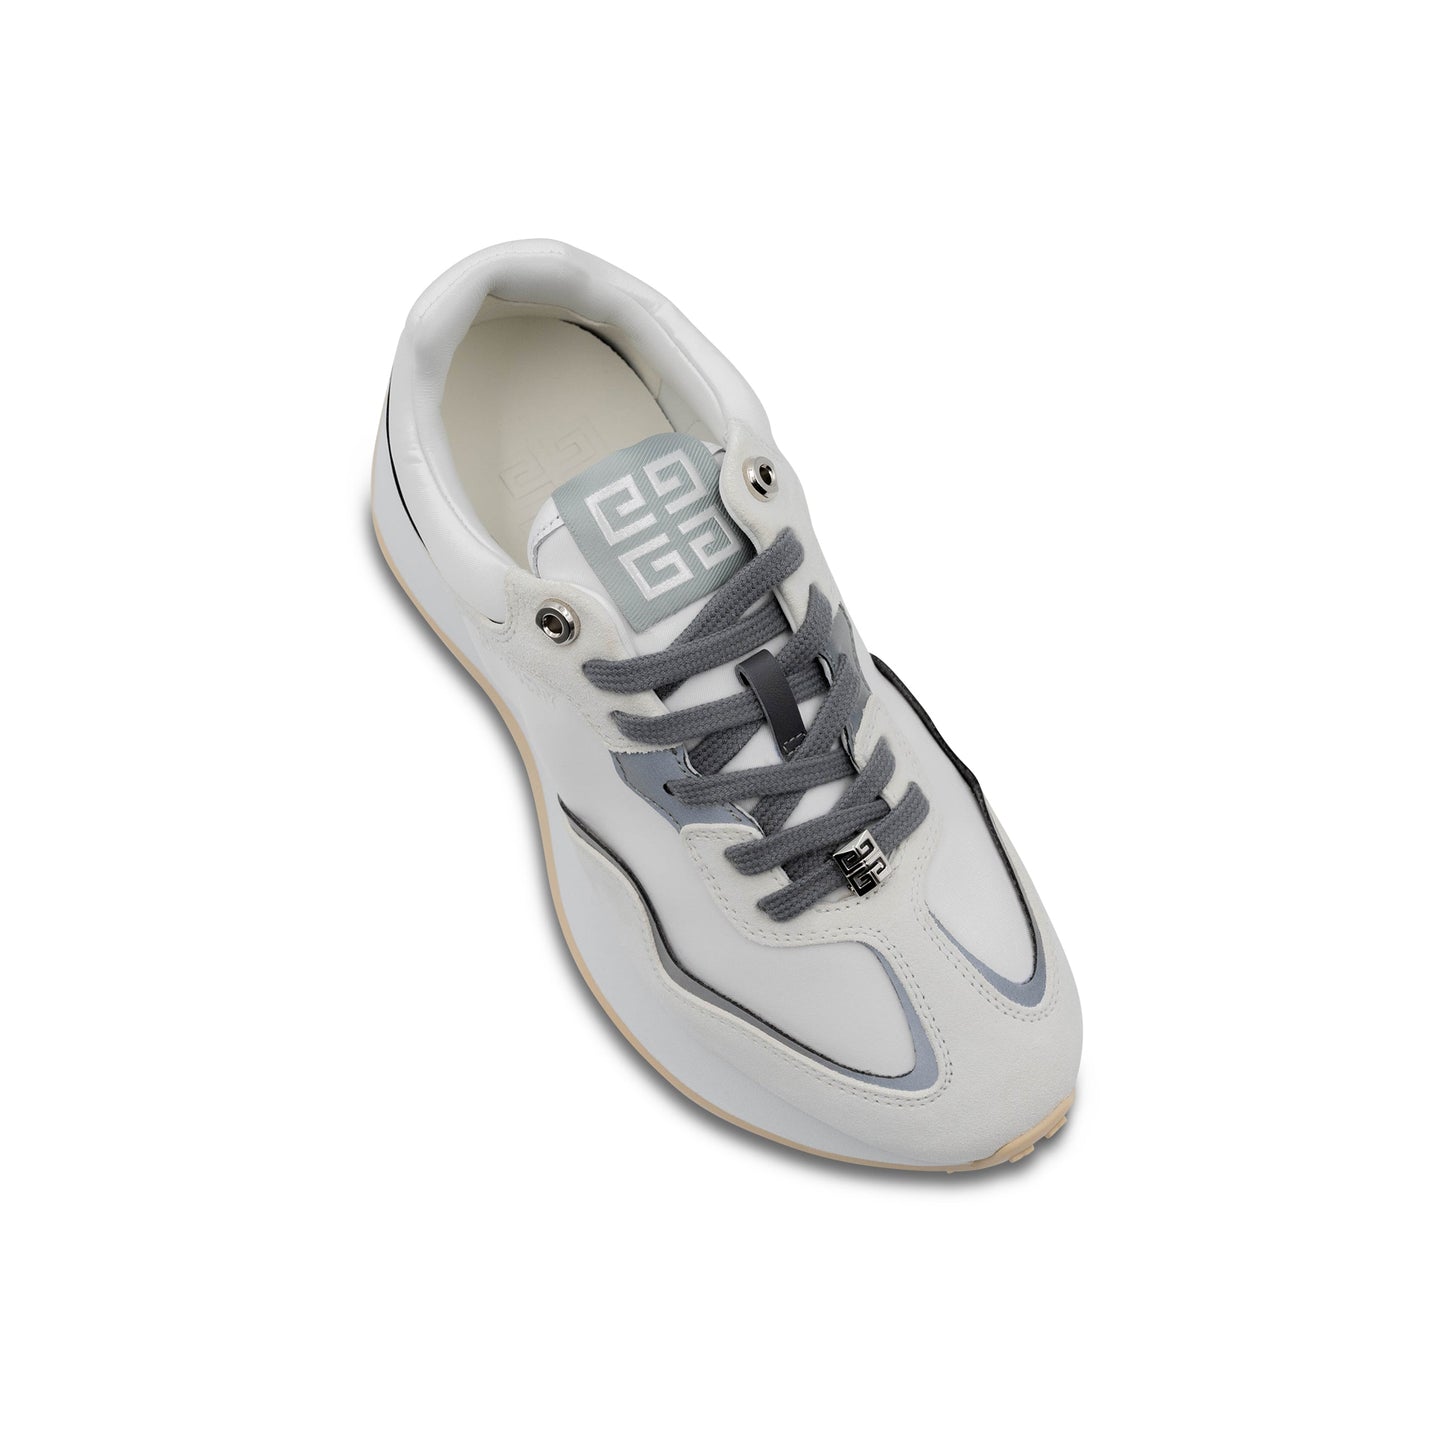 GIV Runner Sneakers in Grey/White